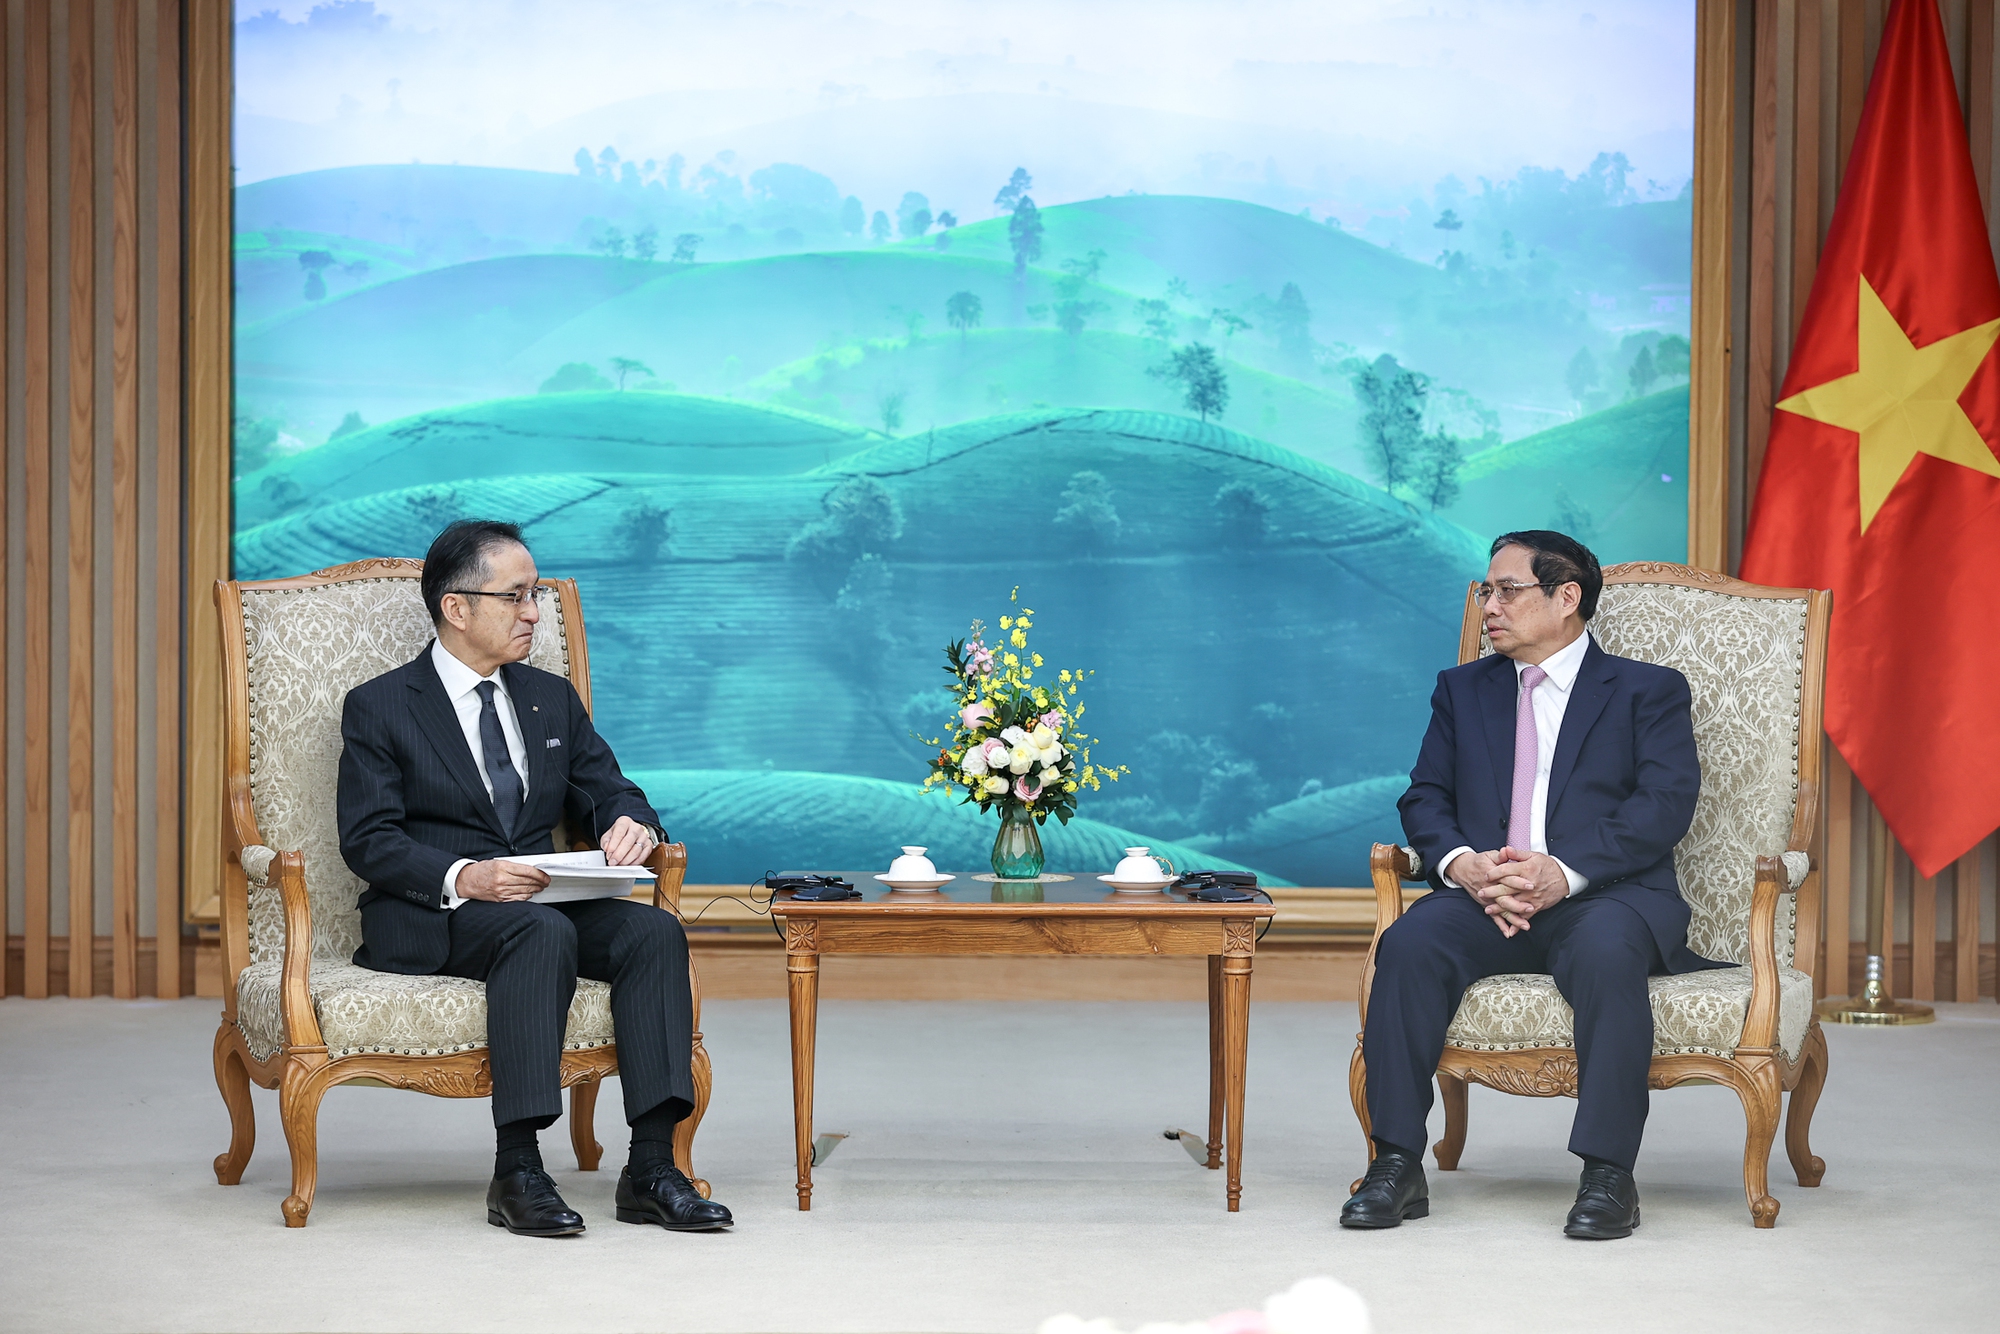 Thủ tướng Phạm Minh Chính mong muốn Tập đoàn Marubeni cùng các doanh nghiệp Nhật Bản tiếp tục mở rộng hợp tác, đầu tư kinh doanh tại Việt Nam trên các lĩnh vực mà Việt Nam ưu tiên phát triển - Ảnh: VGP/Nhật Bắc